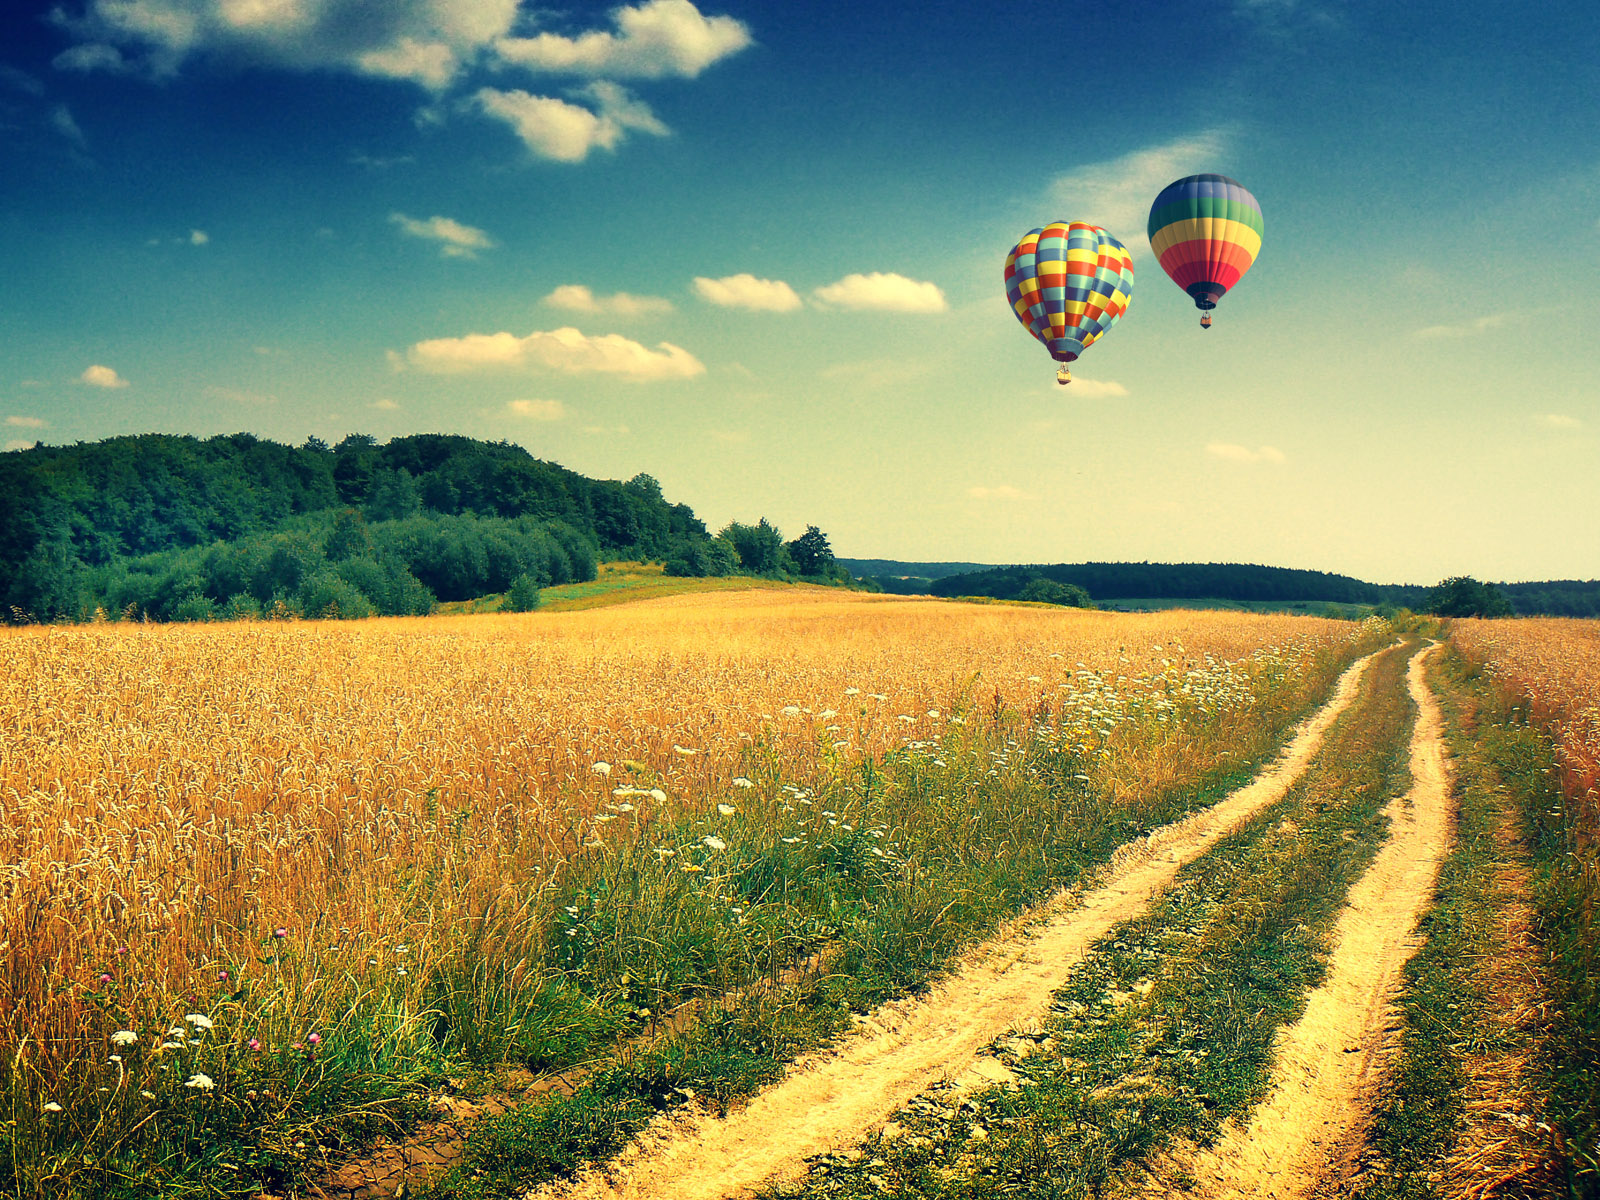 luftballon tapete,heißluftballon fahren,heißluftballon,himmel,natürliche landschaft,ballon